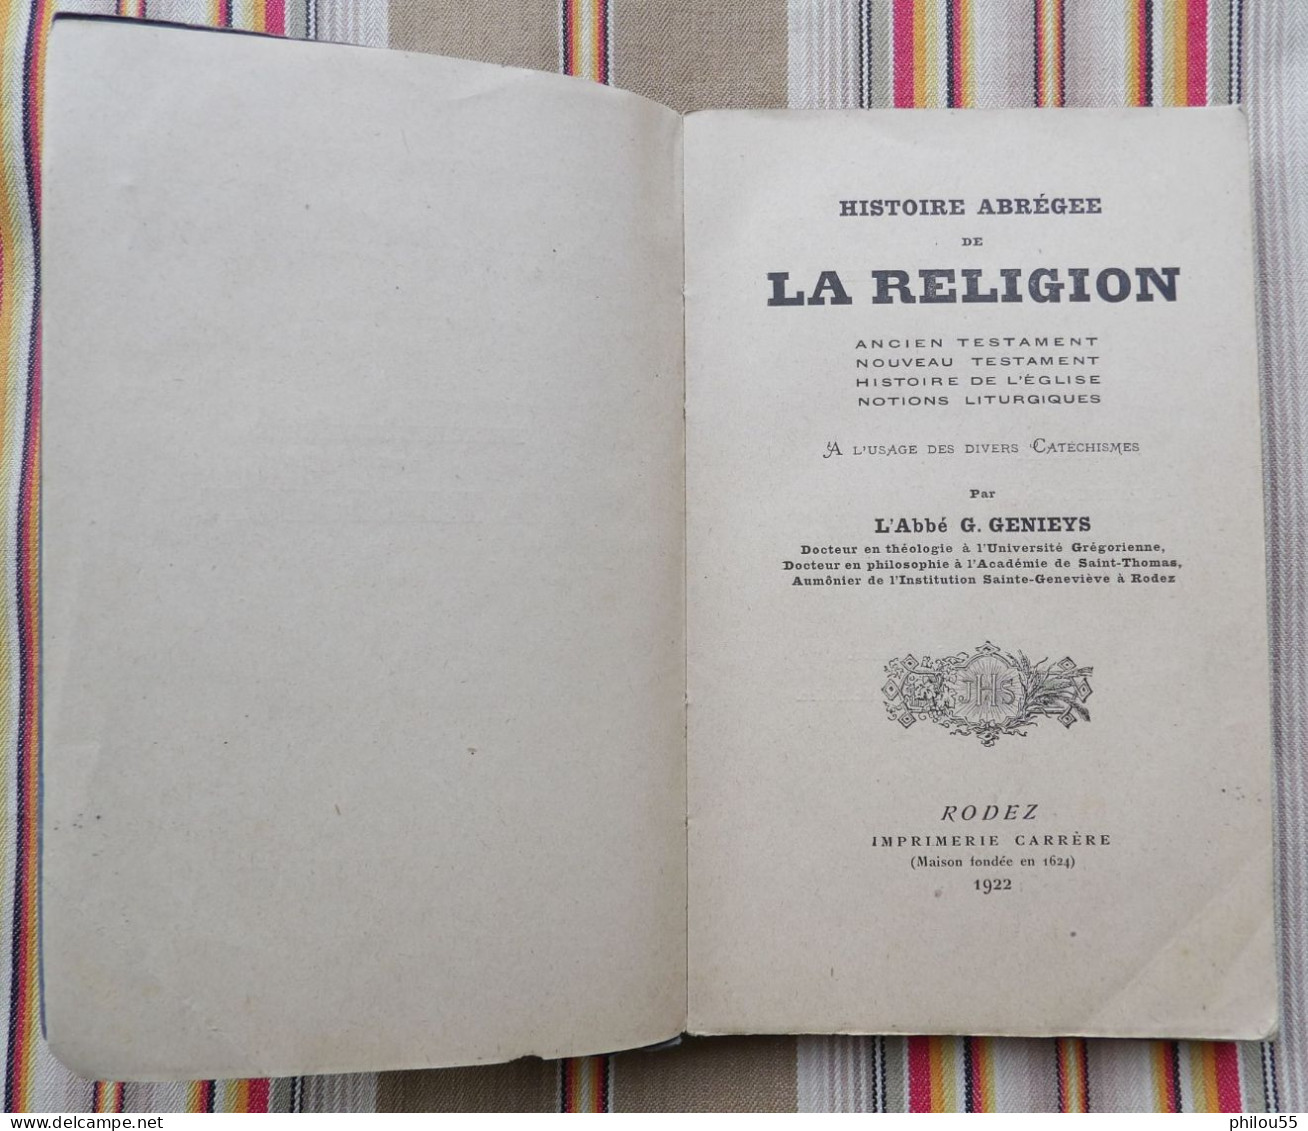 12 RODEZ Imprimerie CARRERE Histoire Abregee De La Religion Abbe GENIEYS 1922 - Midi-Pyrénées